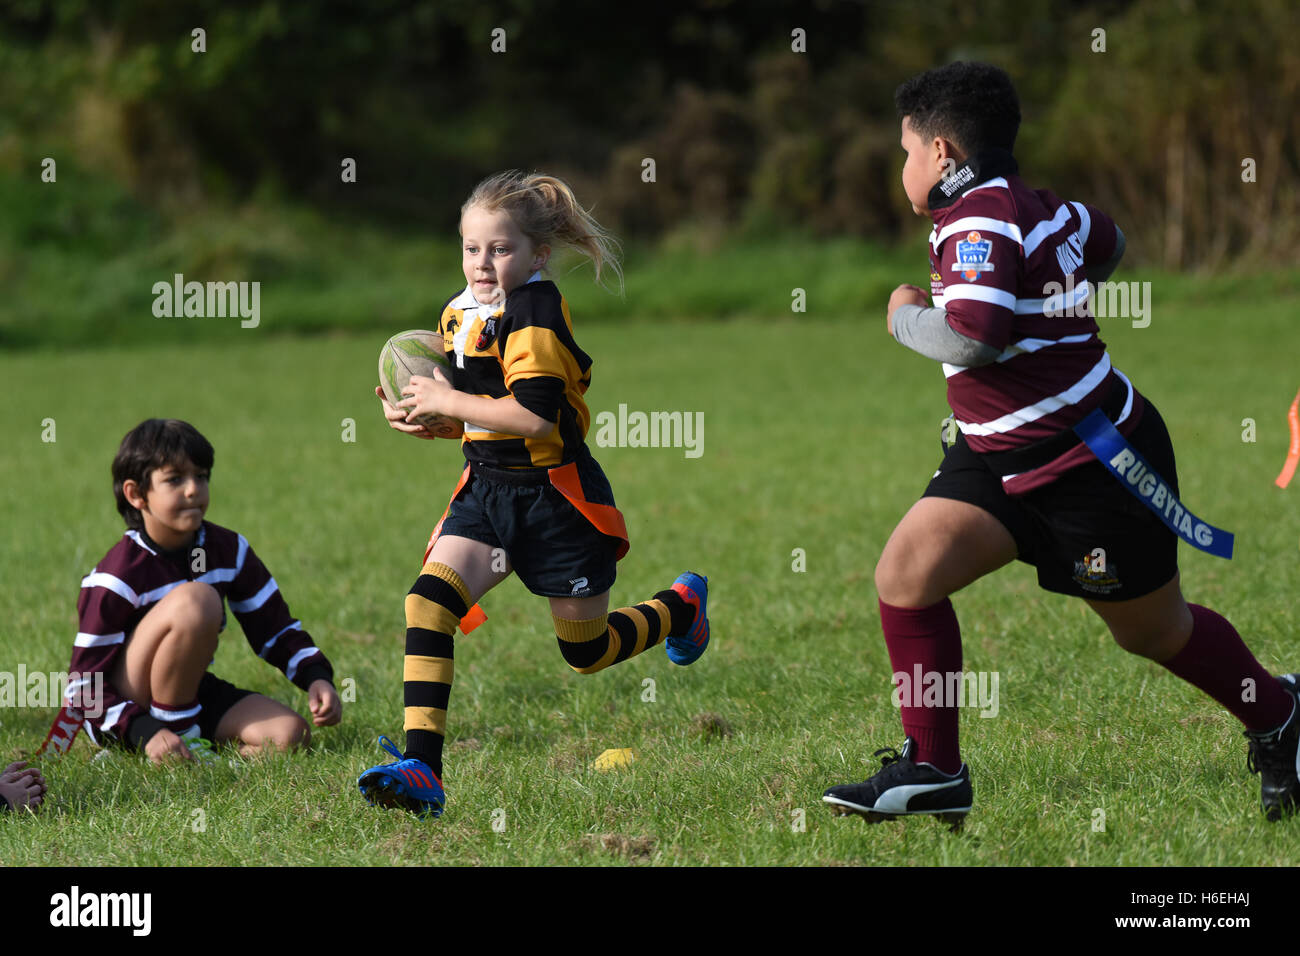 Jeu de rugby pour jeunes enfants avec une jeune fille en train de courir Withg the ball Britain UK enfants sport santé activité filles filles sports de fille Banque D'Images